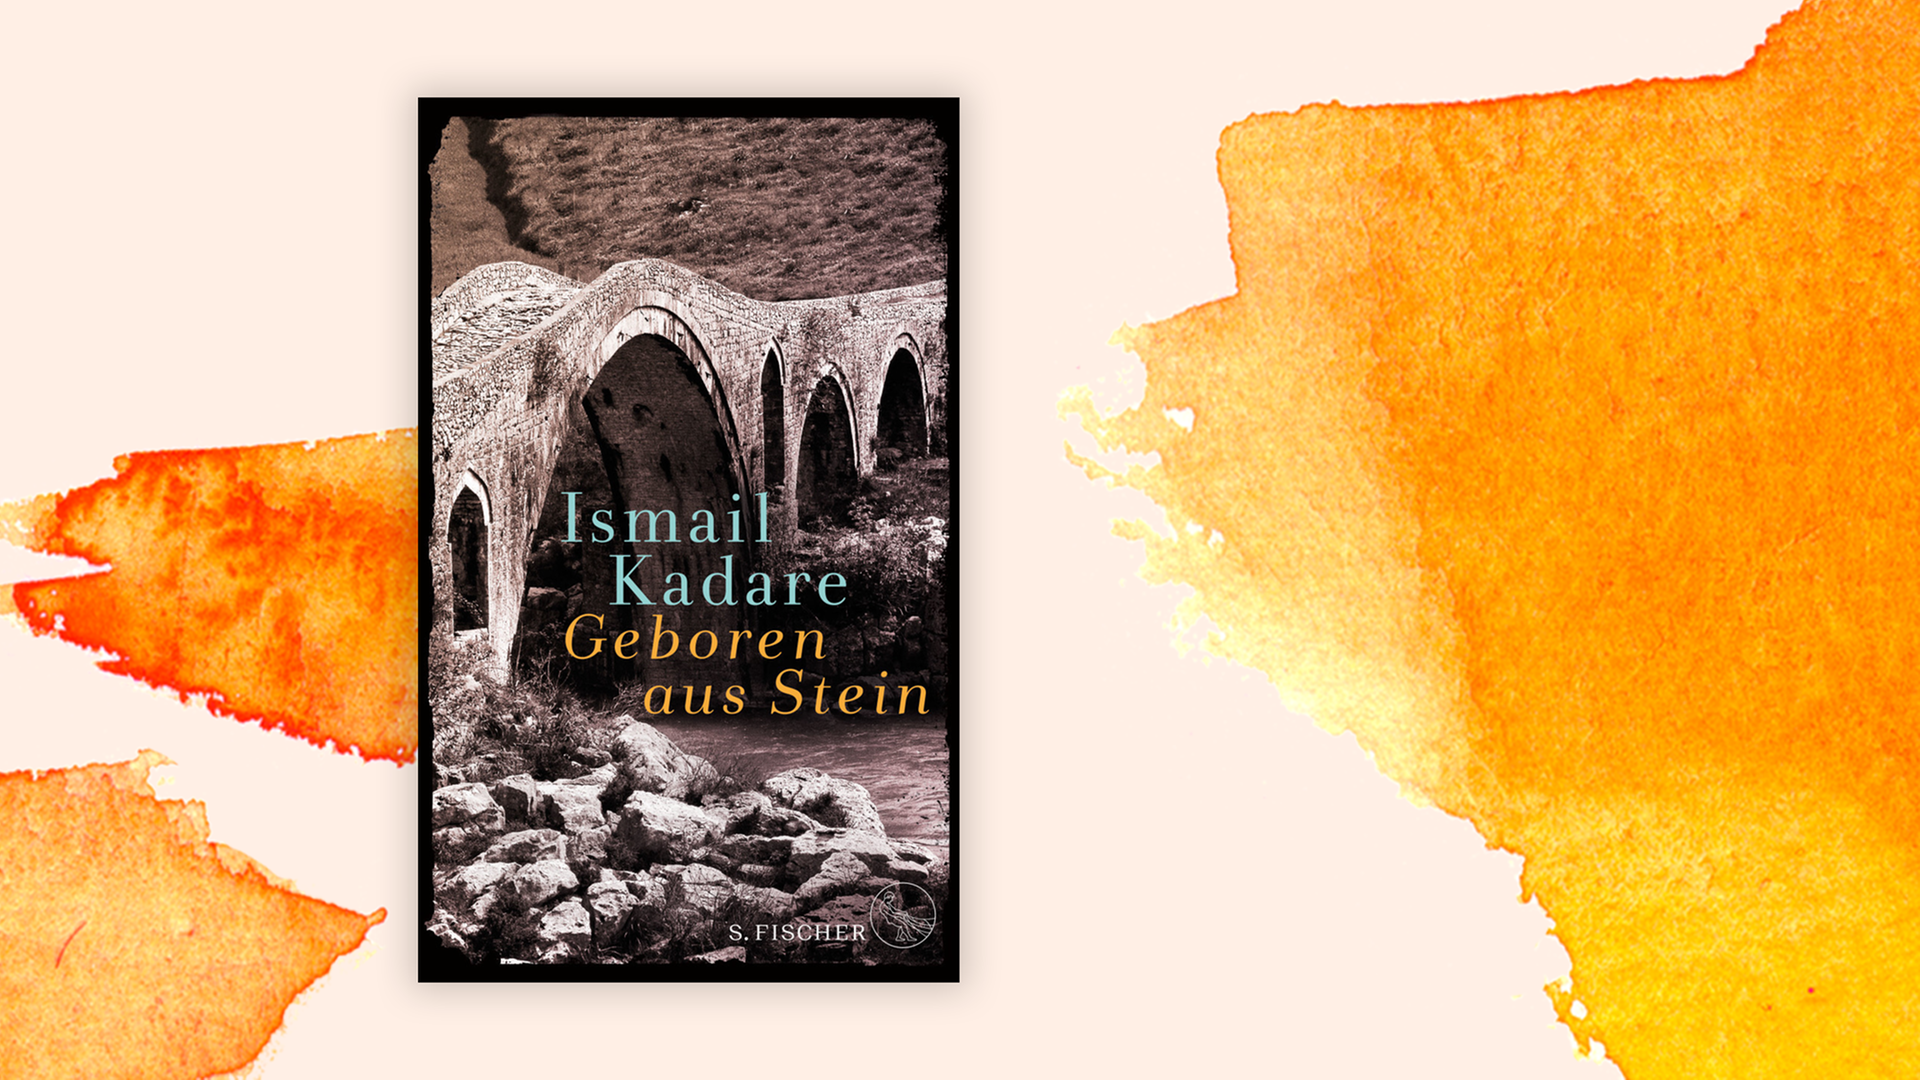 Zu sehen ist das Buchcover des albanischen Autors Ismail Kadare "Geboren aus Stein" auf einem orange-weißem Hintergrund.